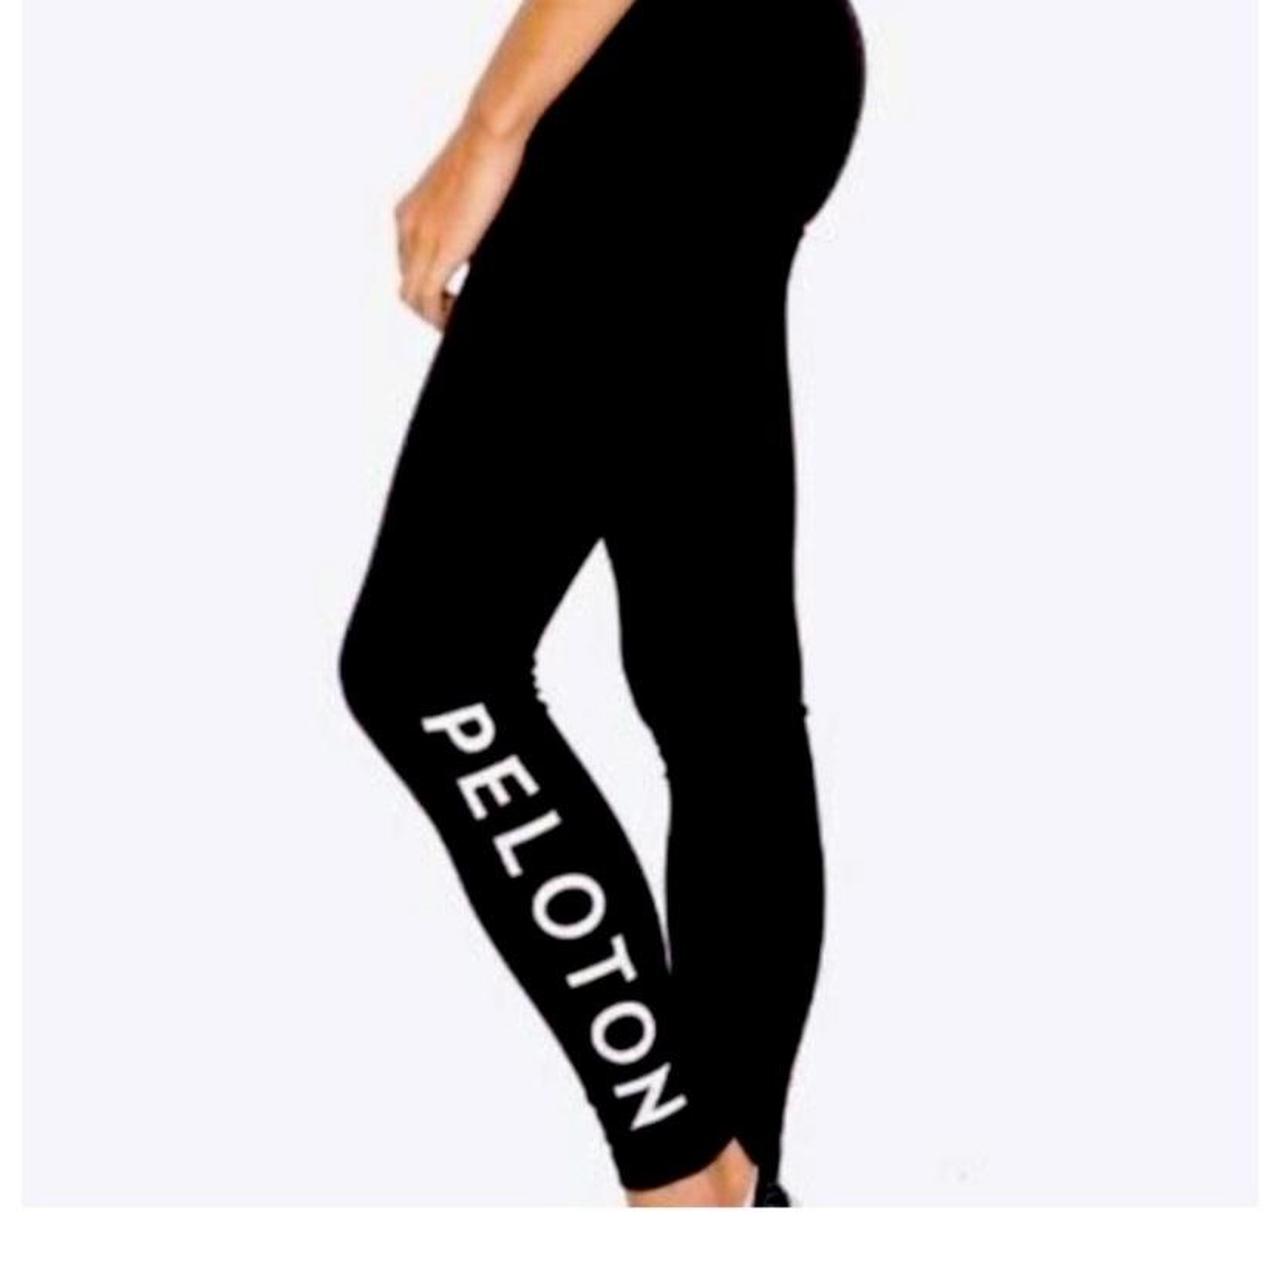 Peloton black leggings size S Excellent - Depop